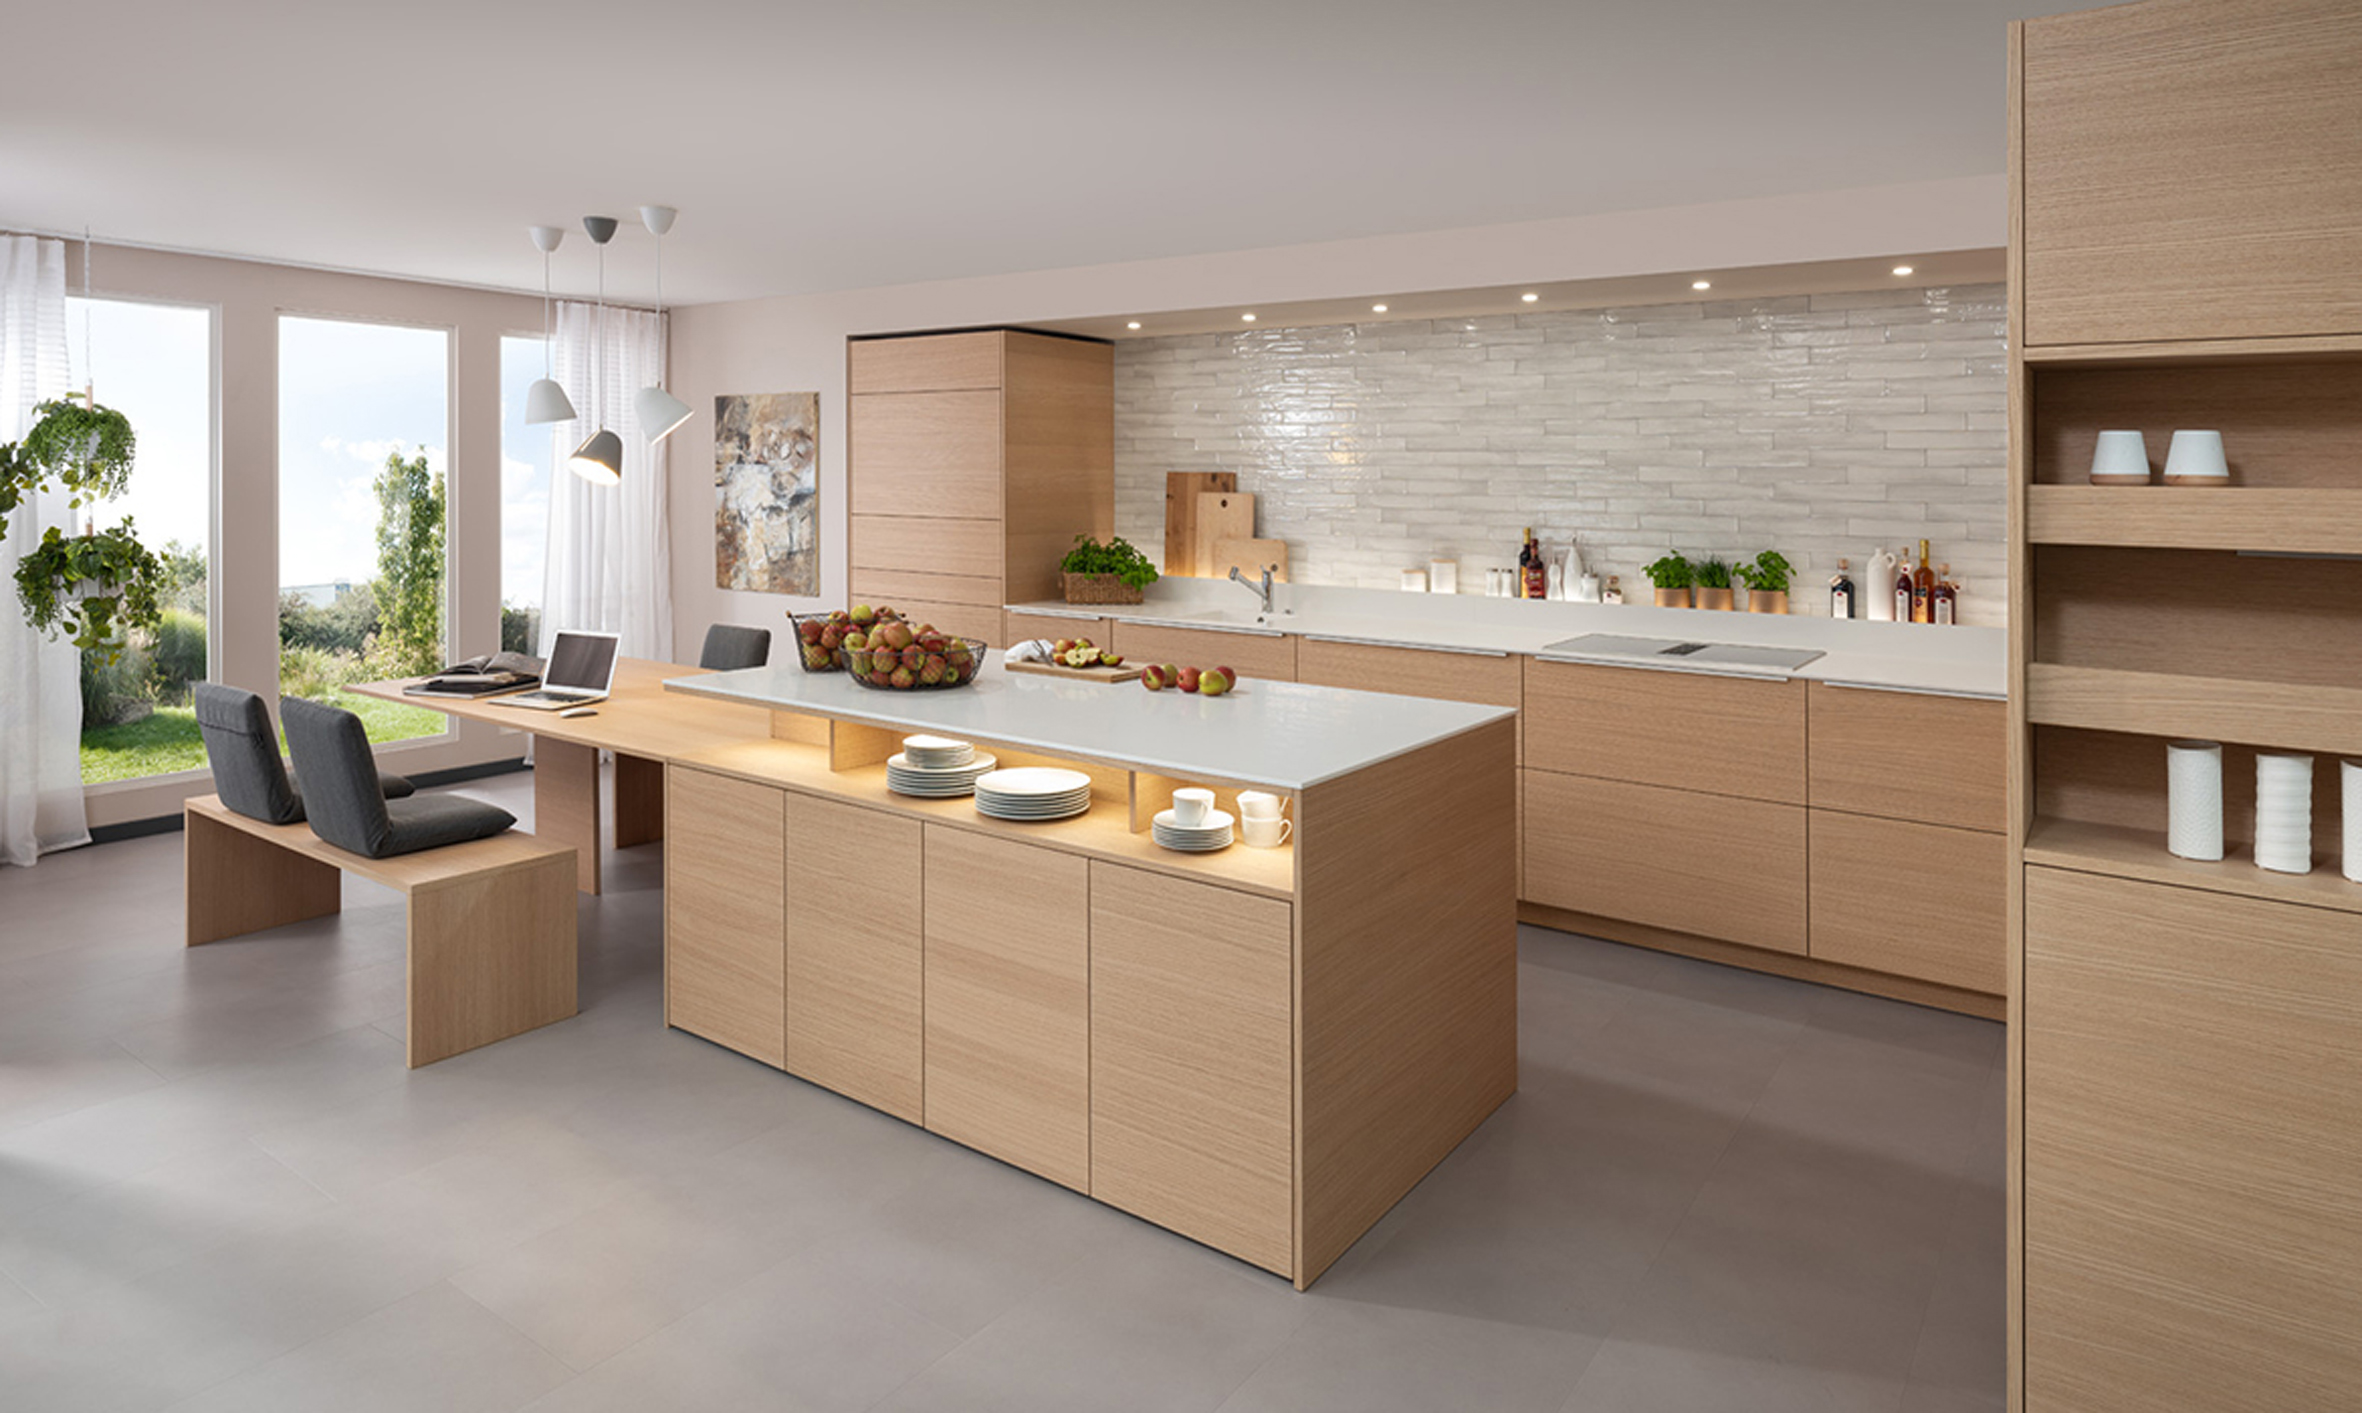 Bild 3: Auch bei Küchenmöbeln beliebt: Echtes Holzfurnier in allen Varianten. Foto: Rempp Küchen